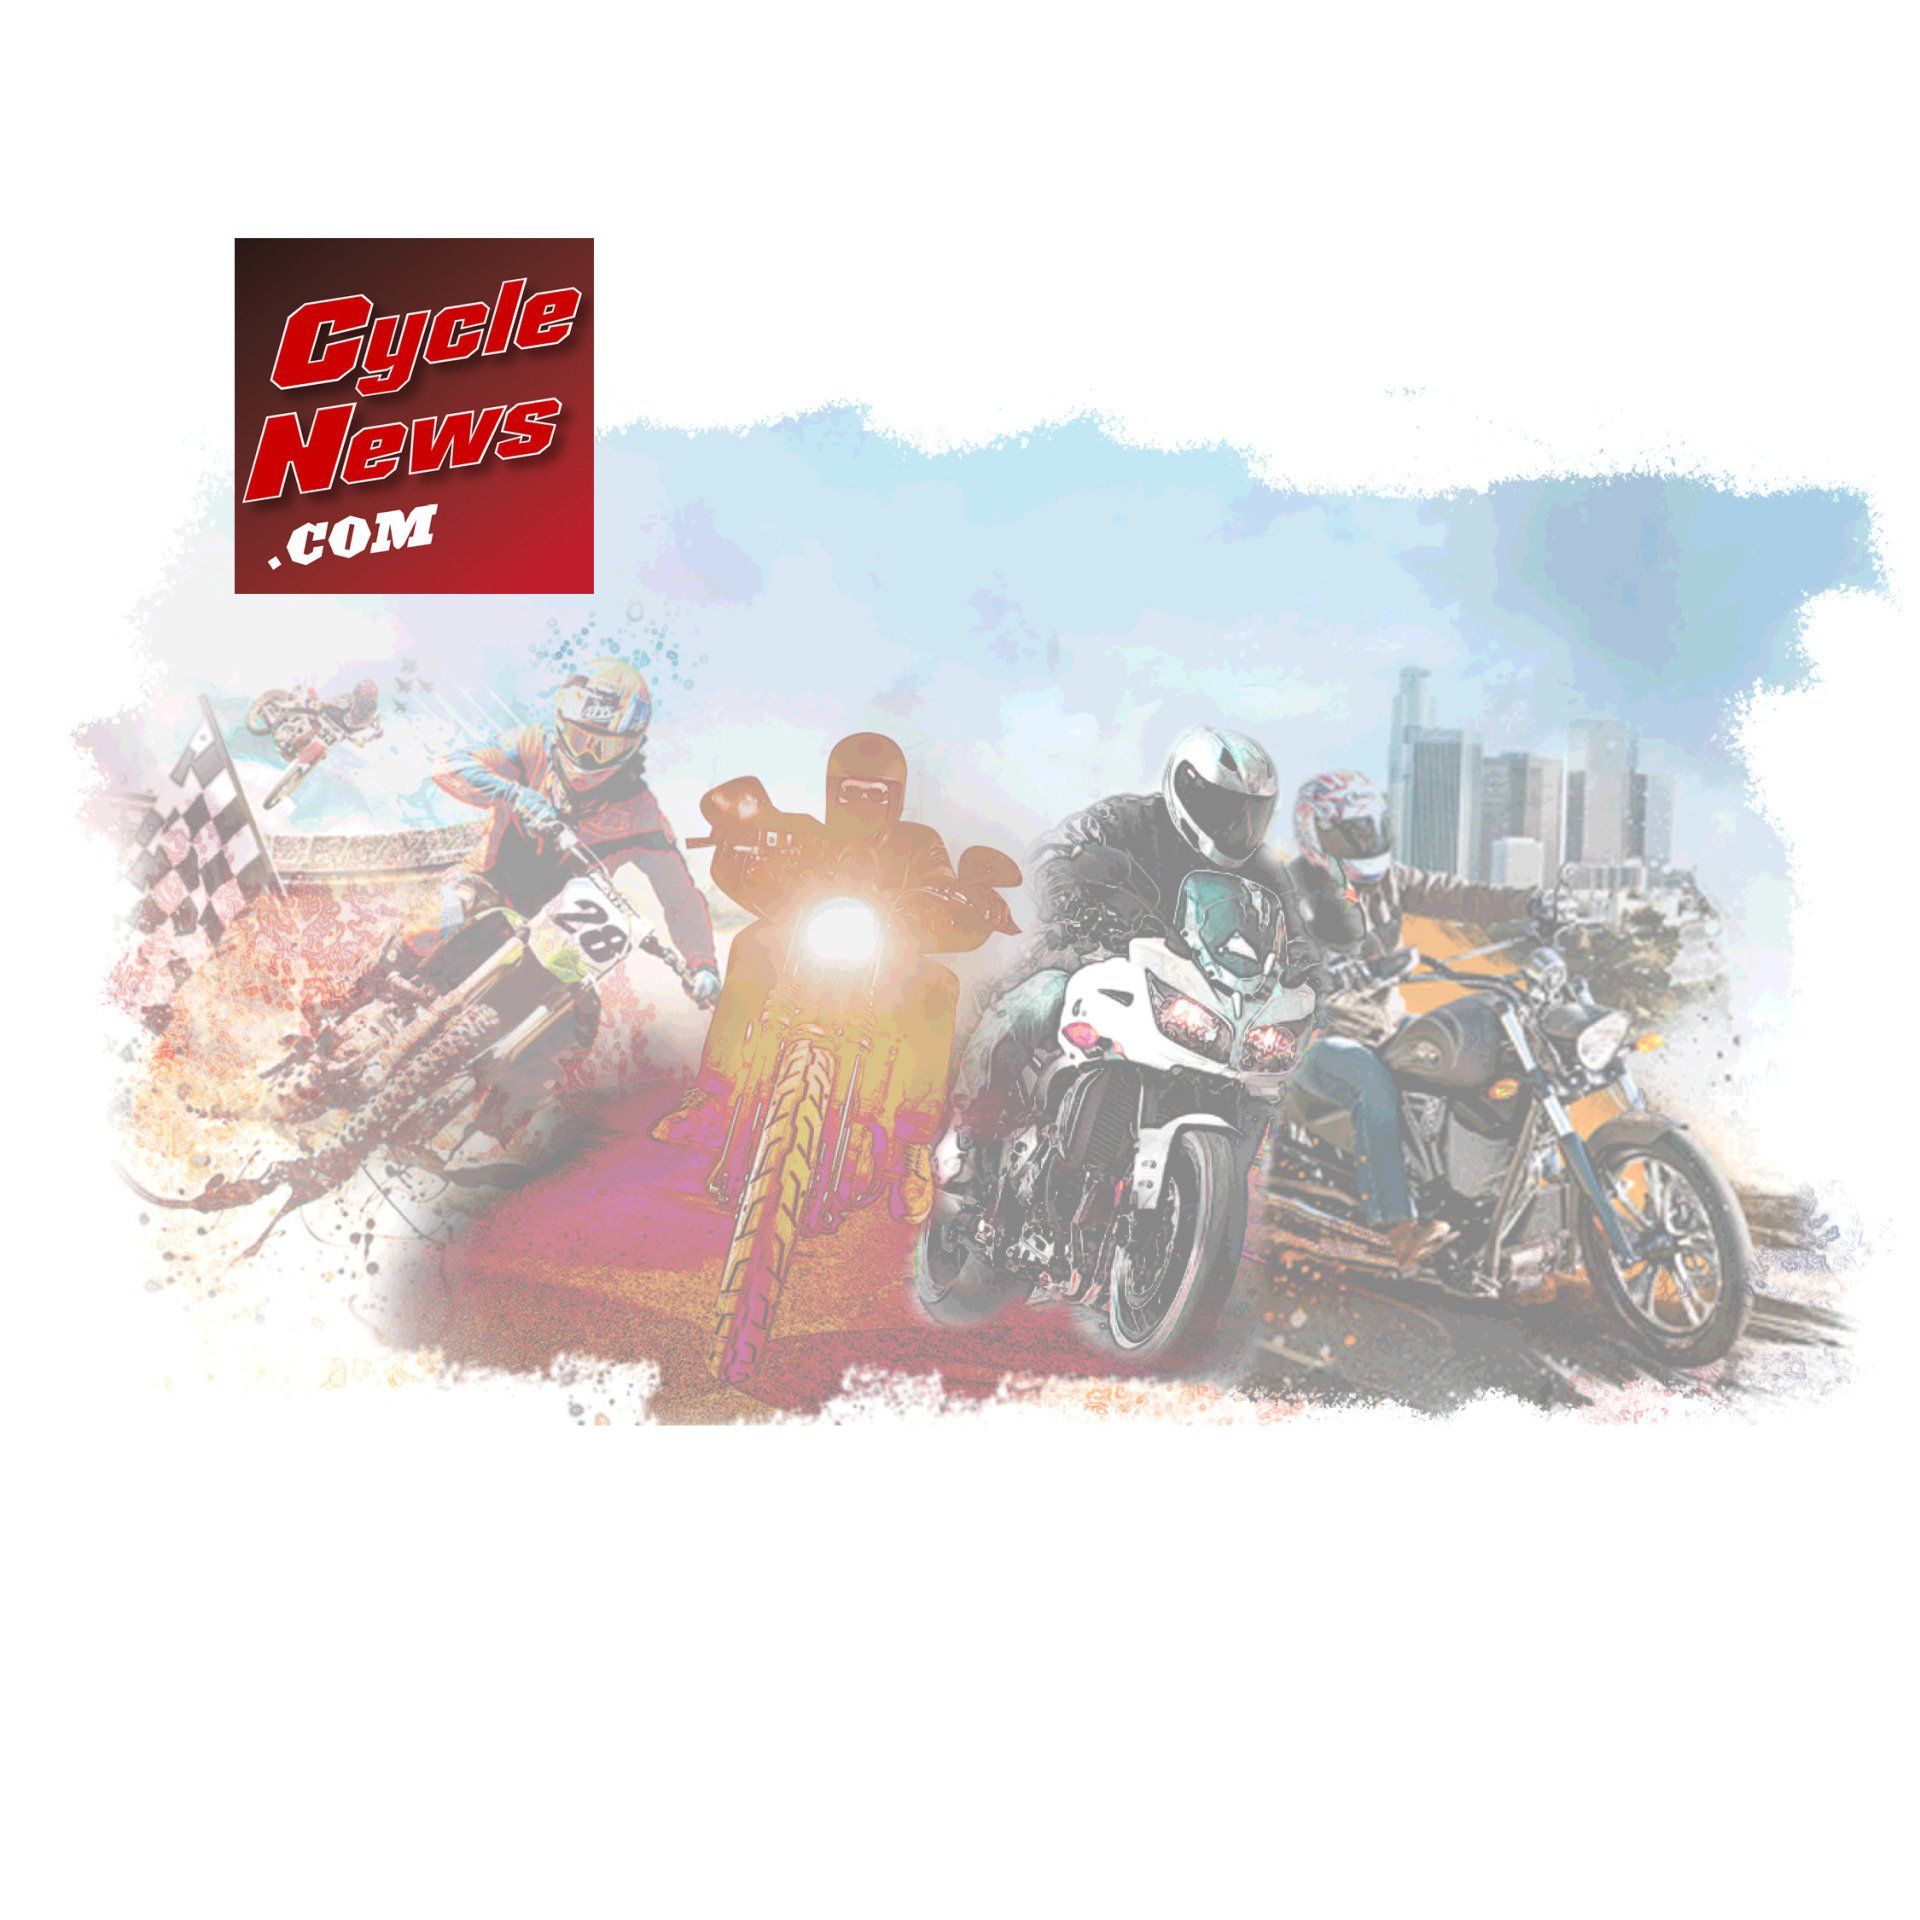 motorcycle market digital online advertising